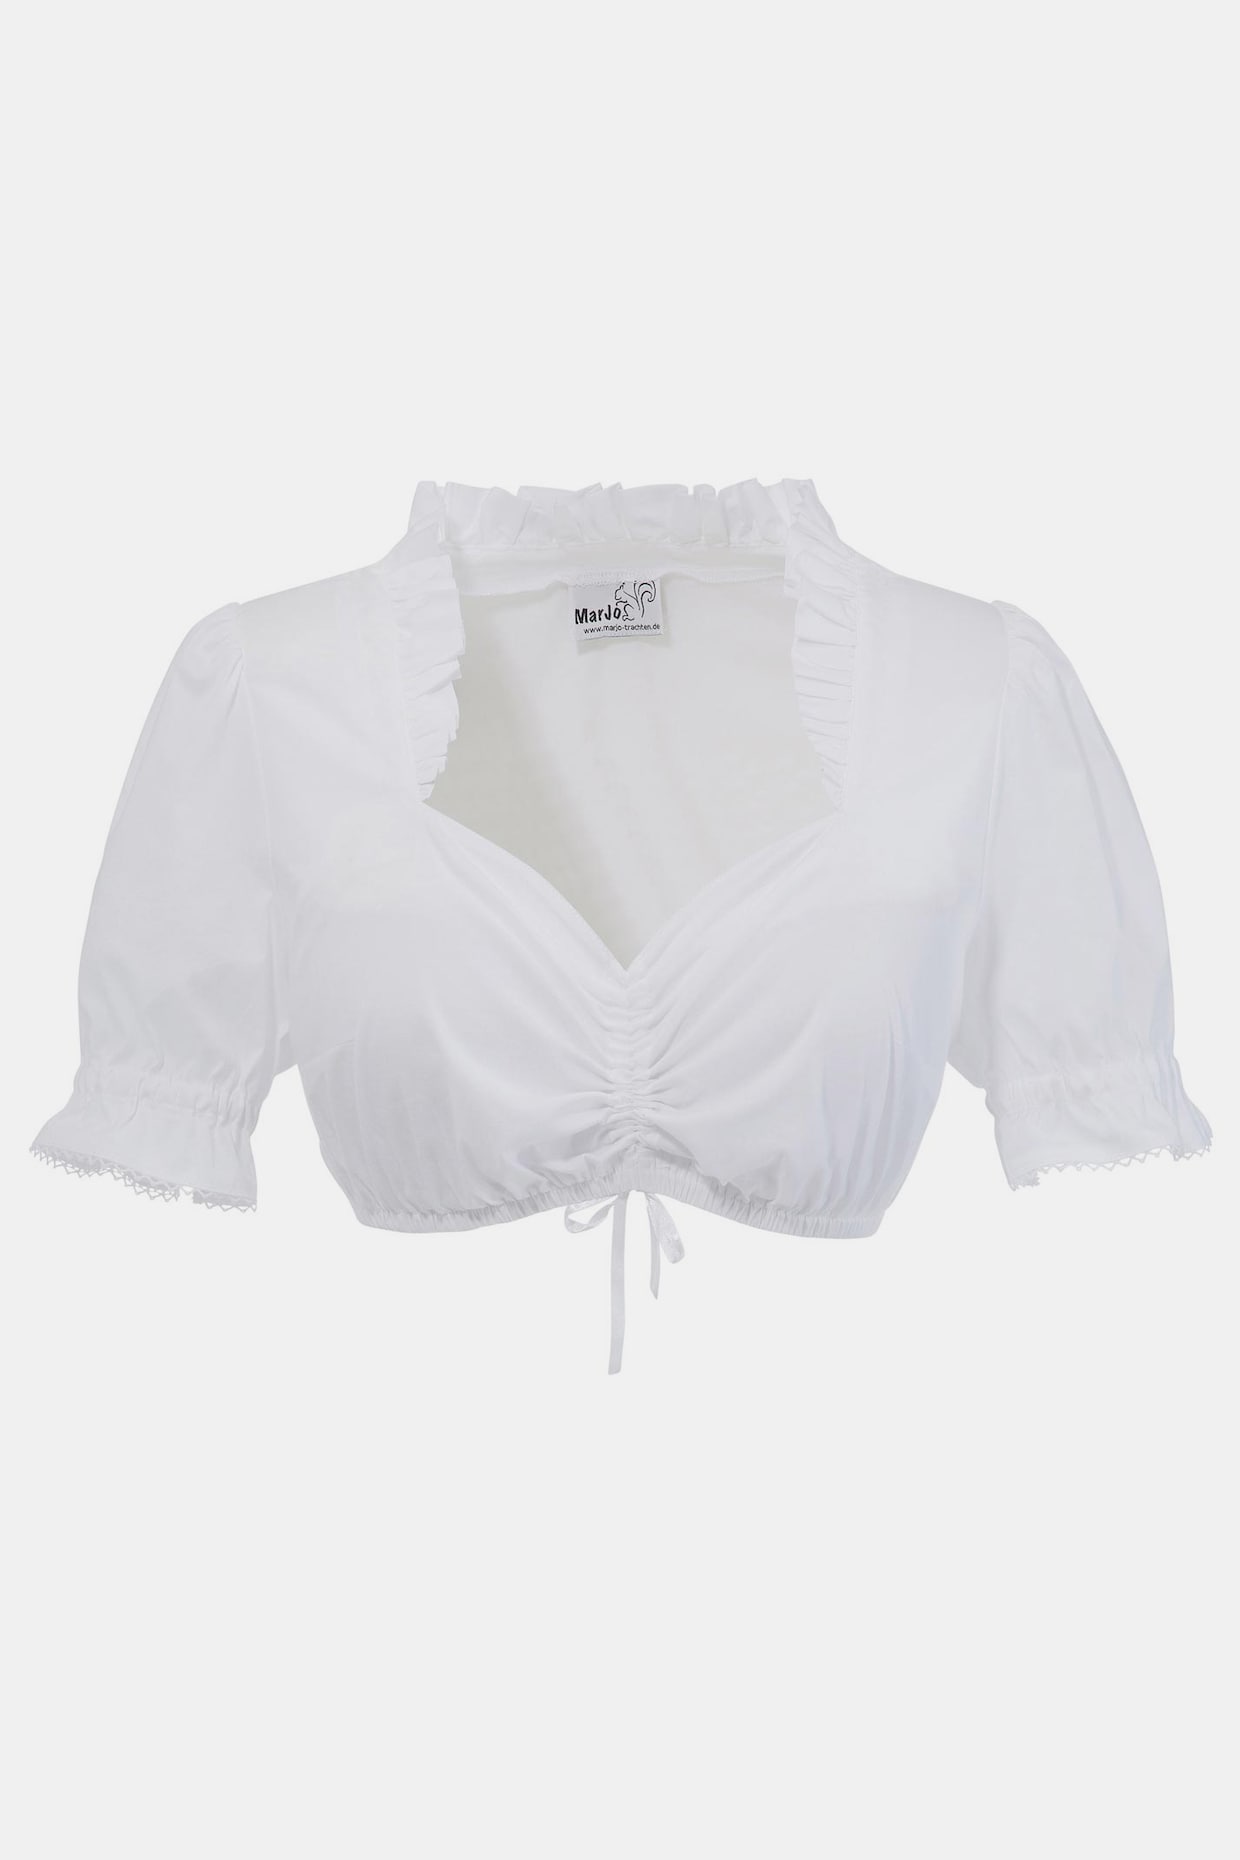 MarJo Dirndl-blouse - wit